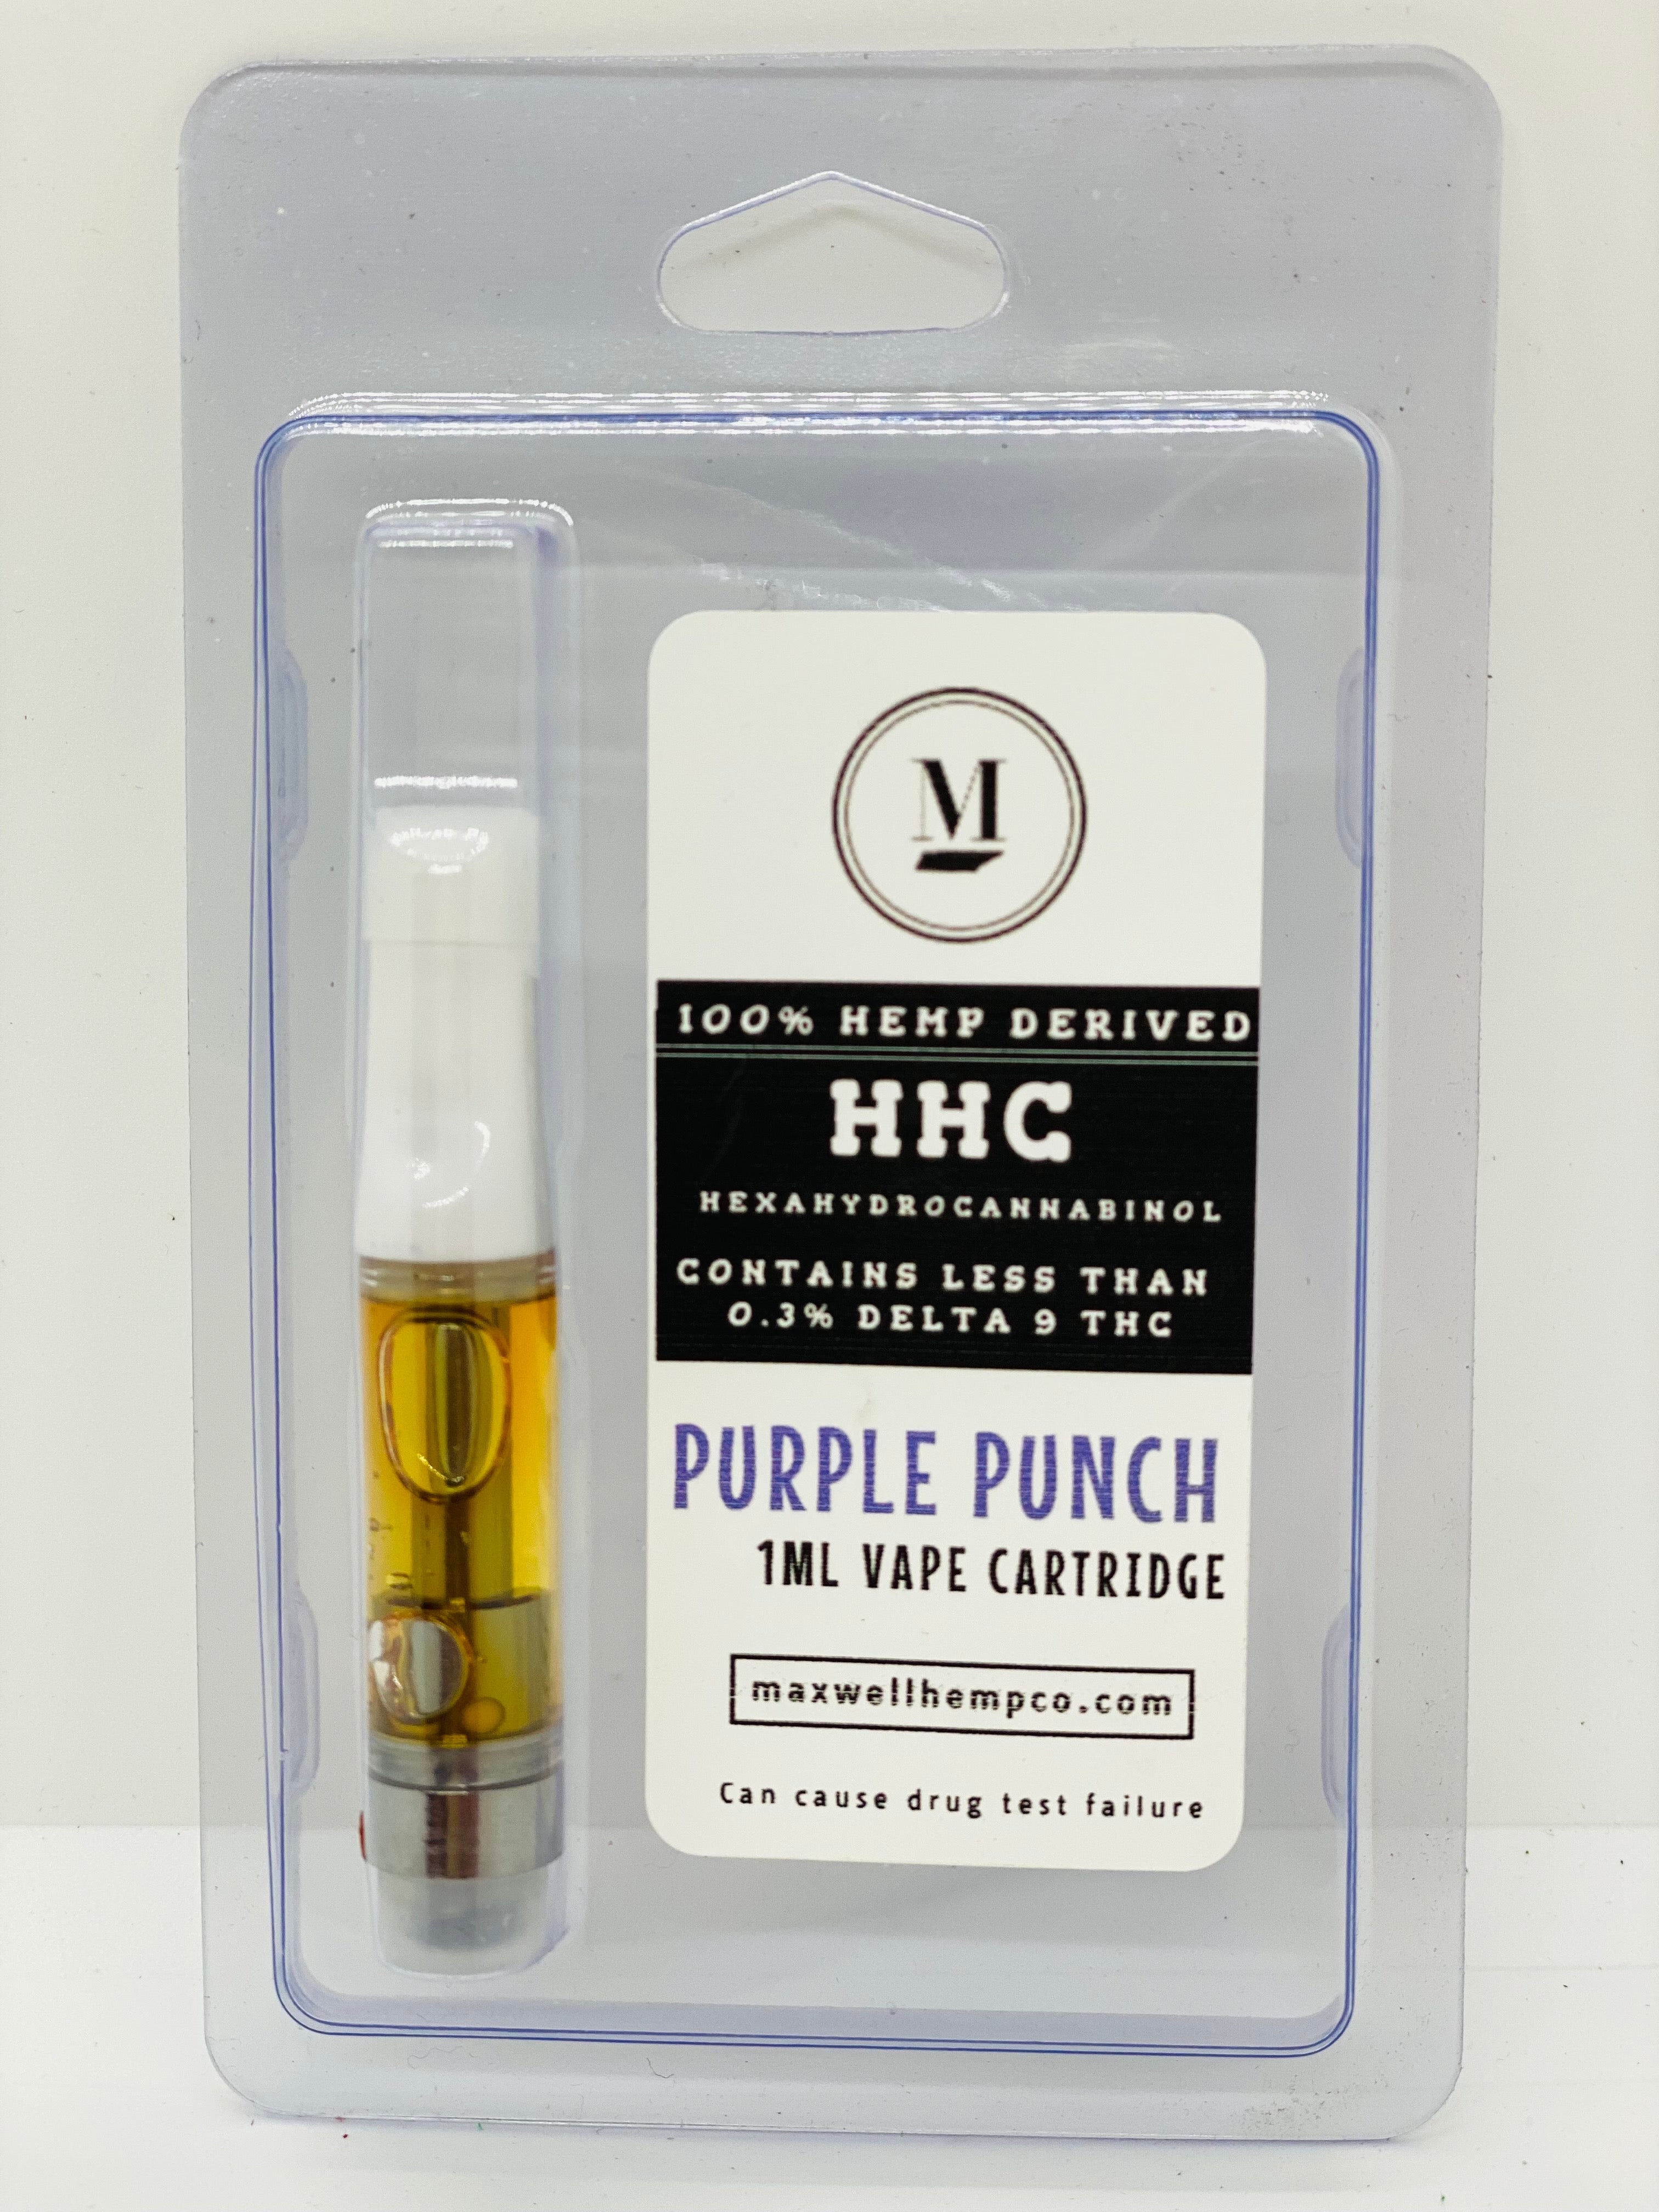 HHC Vape Cartridge – Maxwell Hemp Company